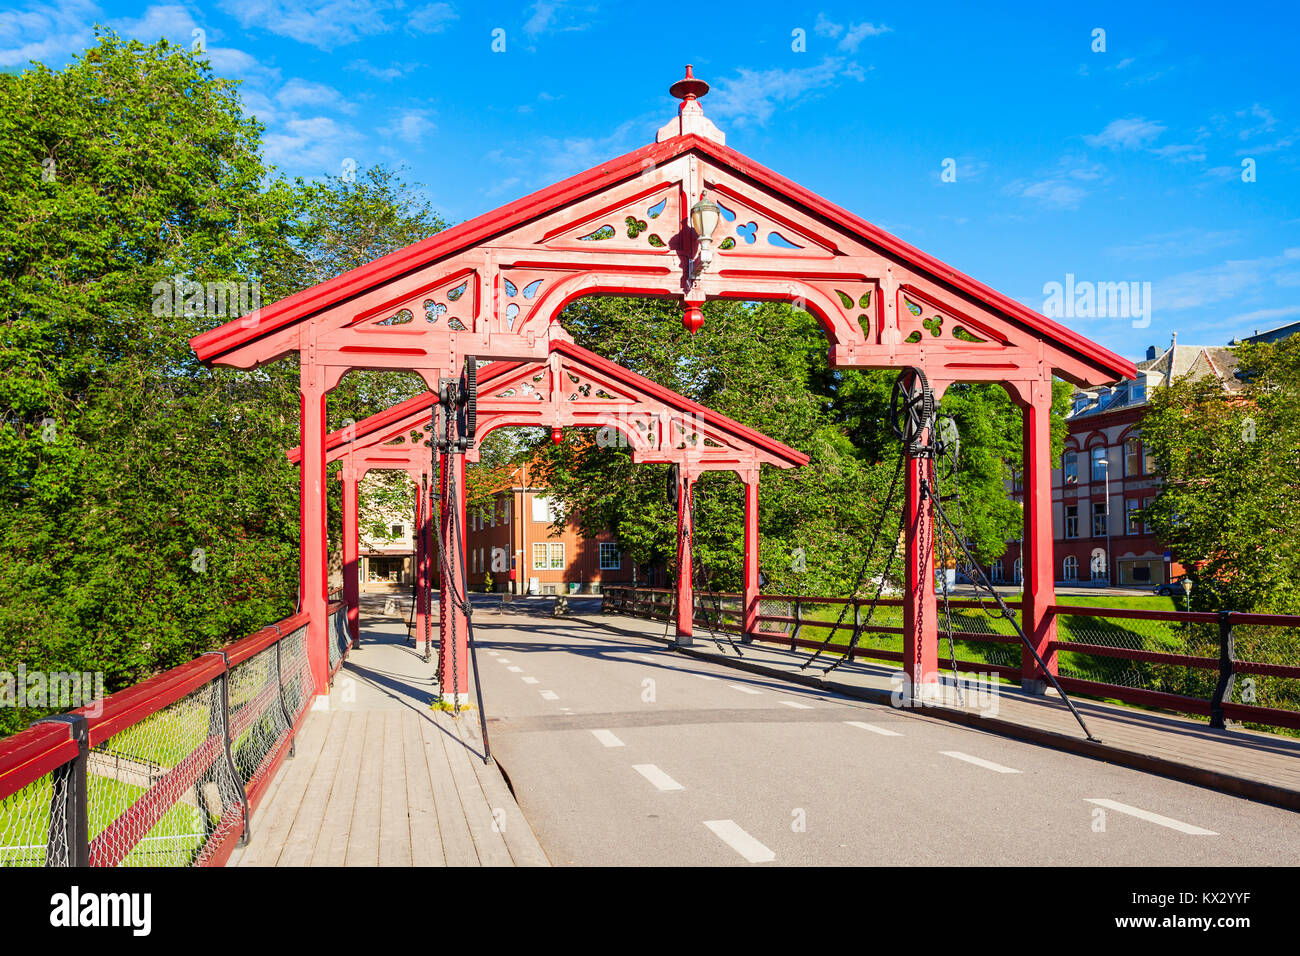 Old Town Bridge or Gamle Bybro or Bybroa is a bridge crosses Nidelva River in Trondheim, Norway Stock Photo